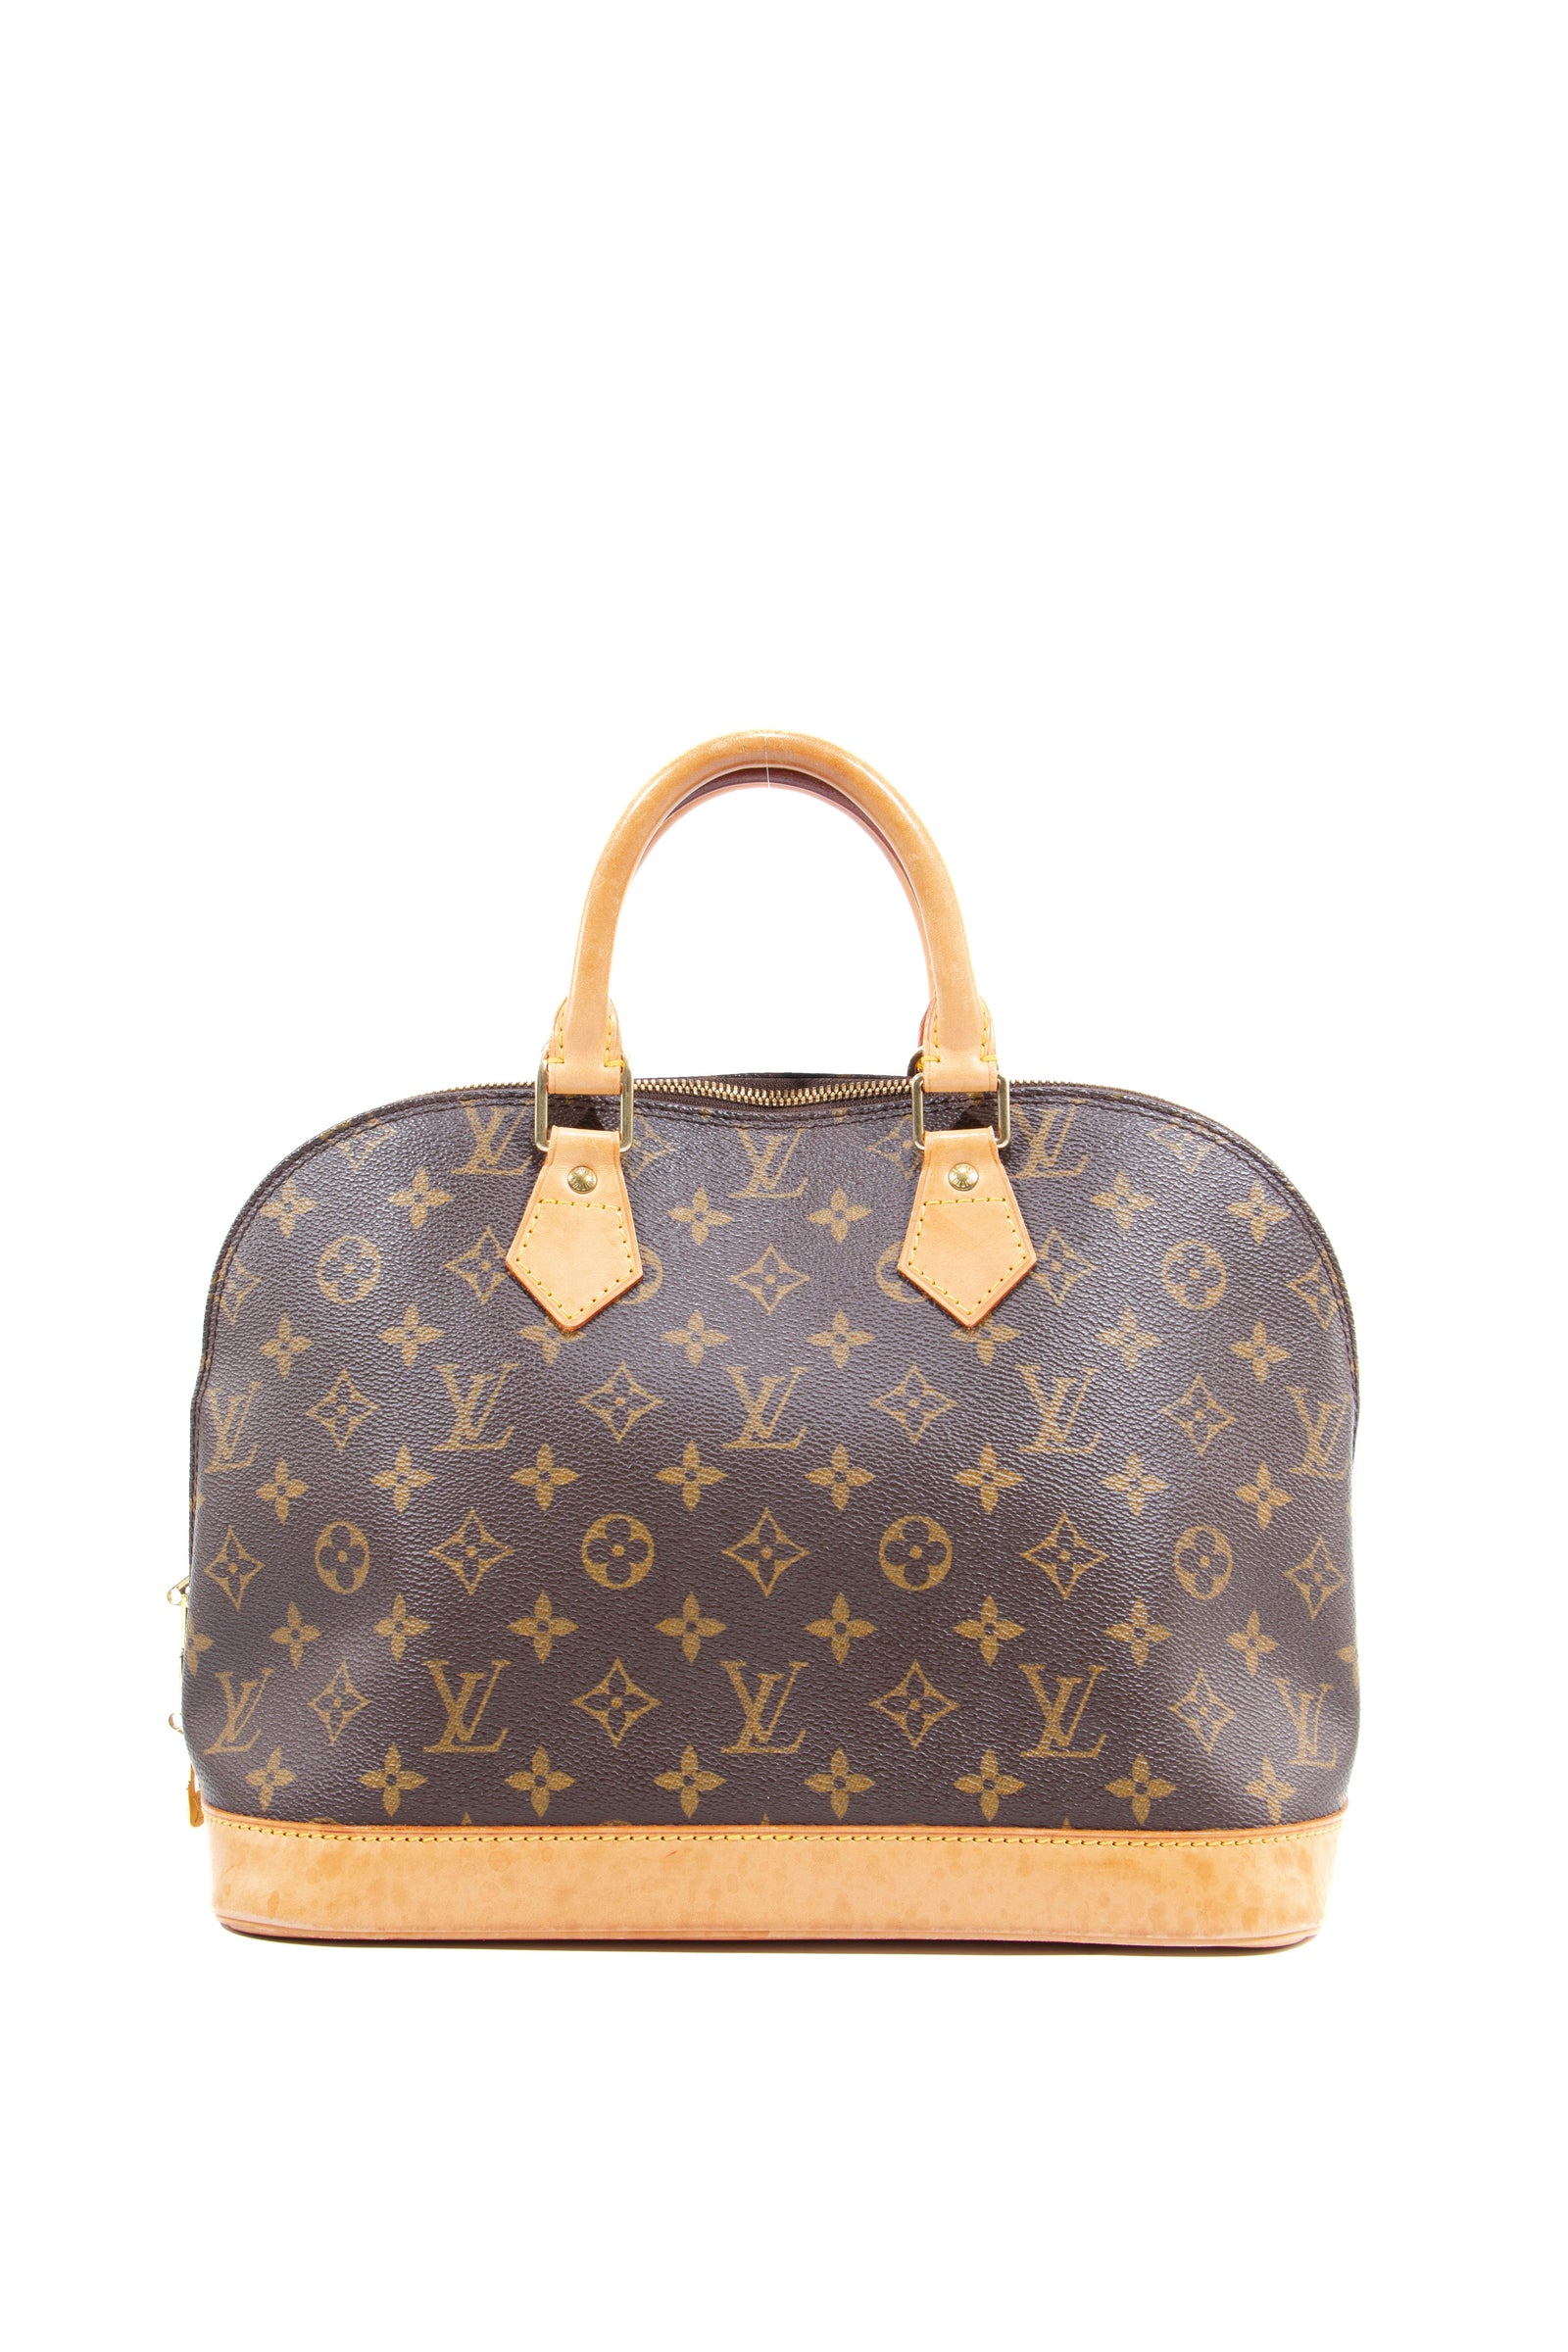 Vtg Louis Vuitton Bag 1940's Holdall Leather 1930's Louis Vuitton